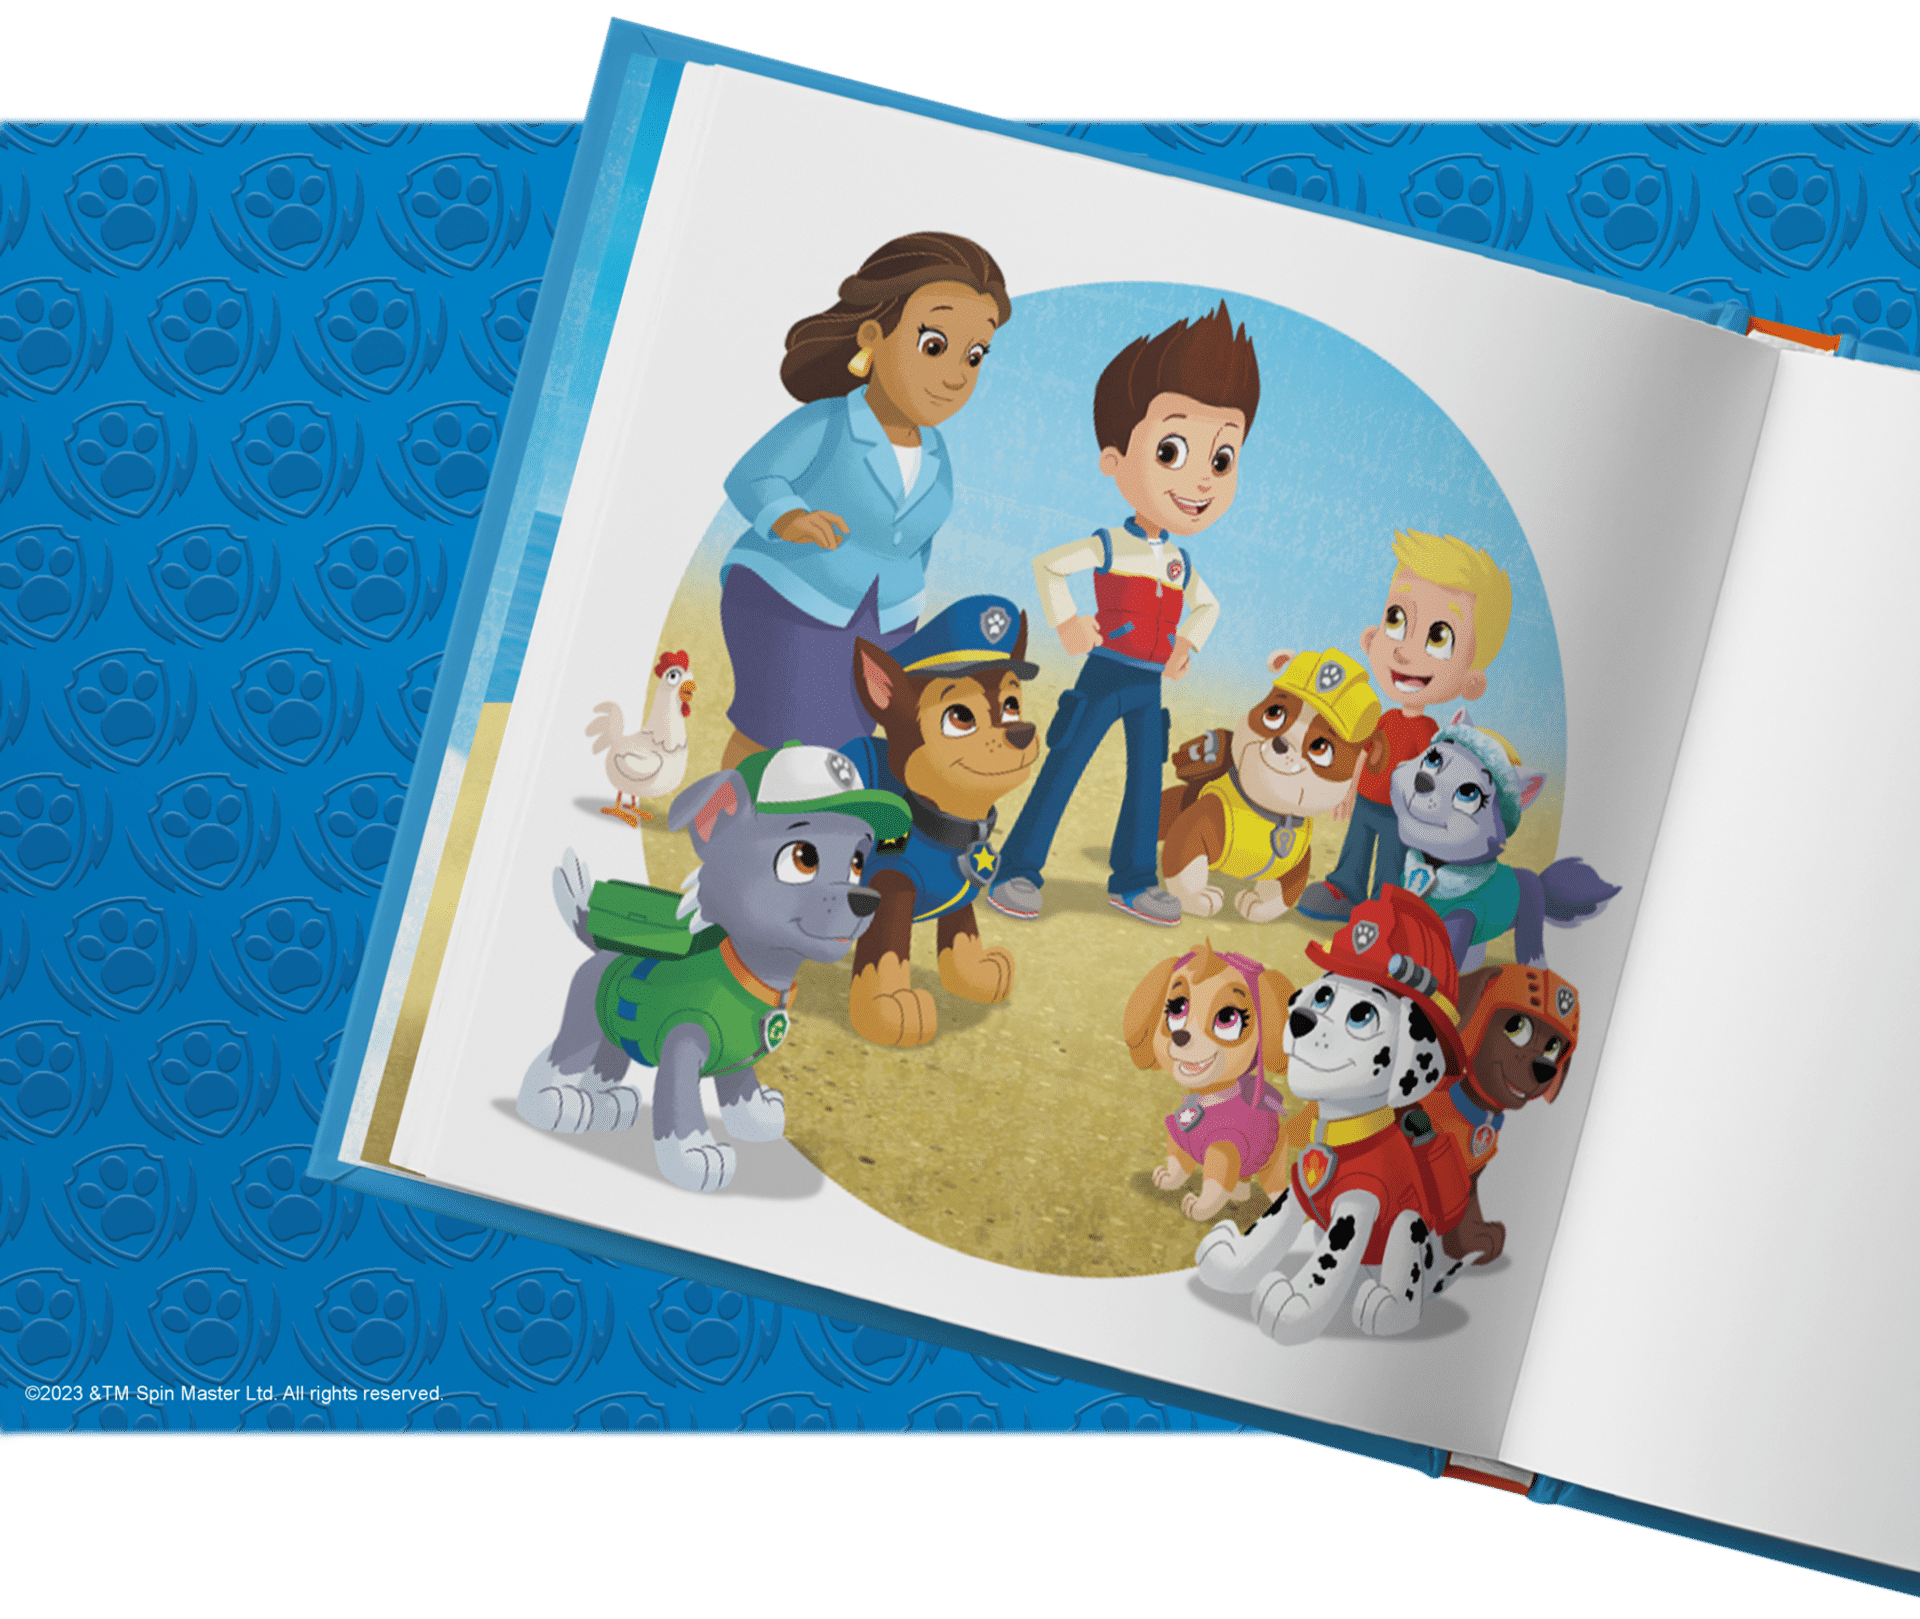 Személyre szabott könyveinknek köszönhetően a gyermeked a kedvenc hősei mellett szerepelhet a történetben!